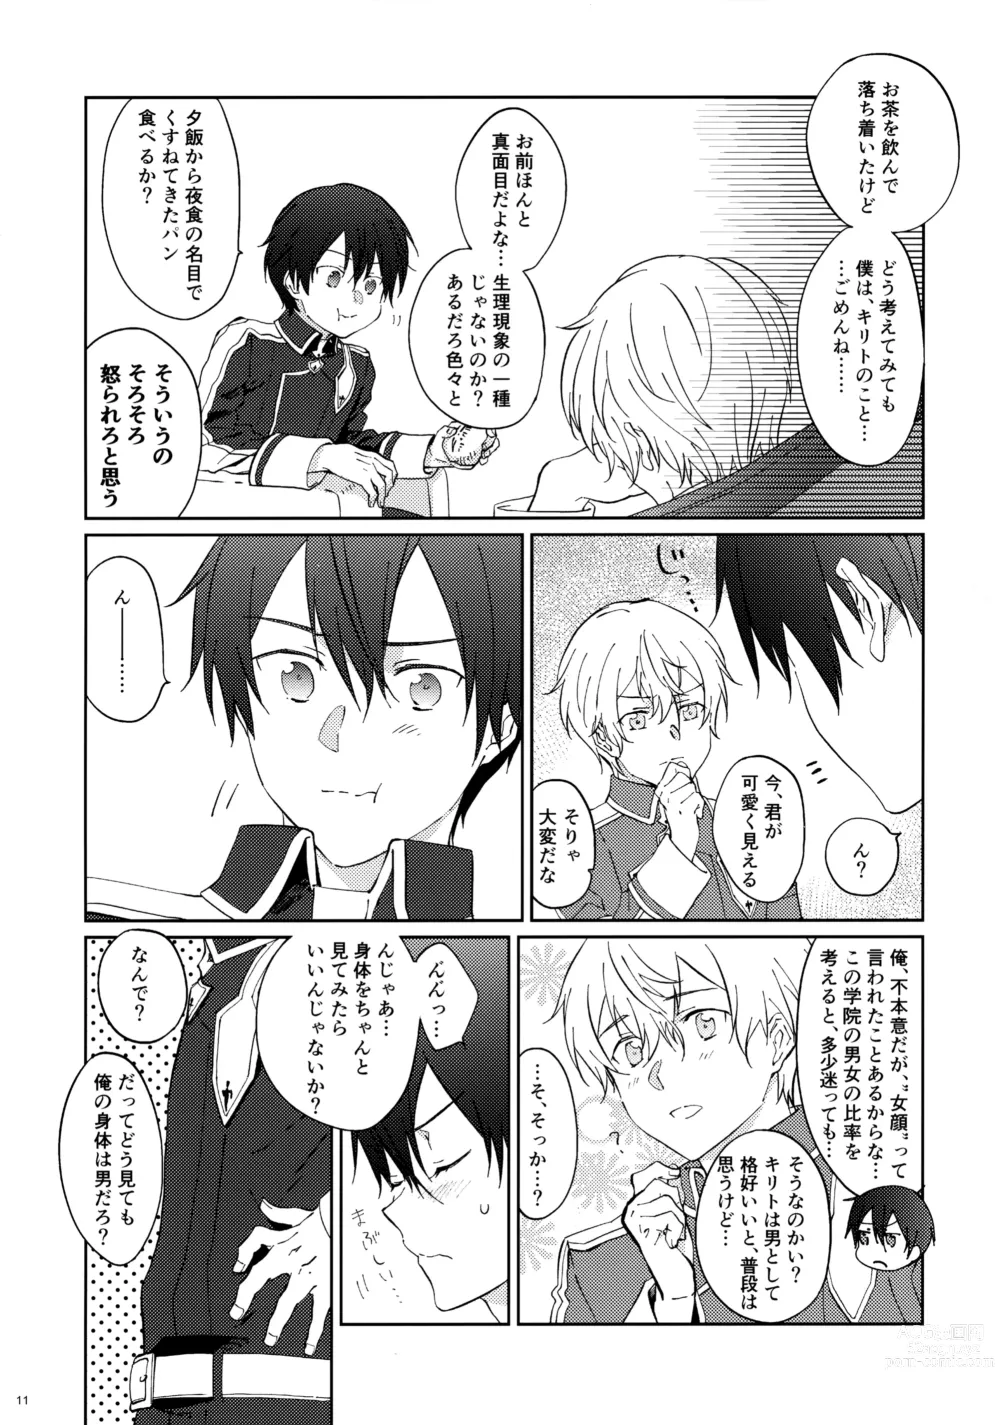 Page 13 of doujinshi EugeKiri Blend